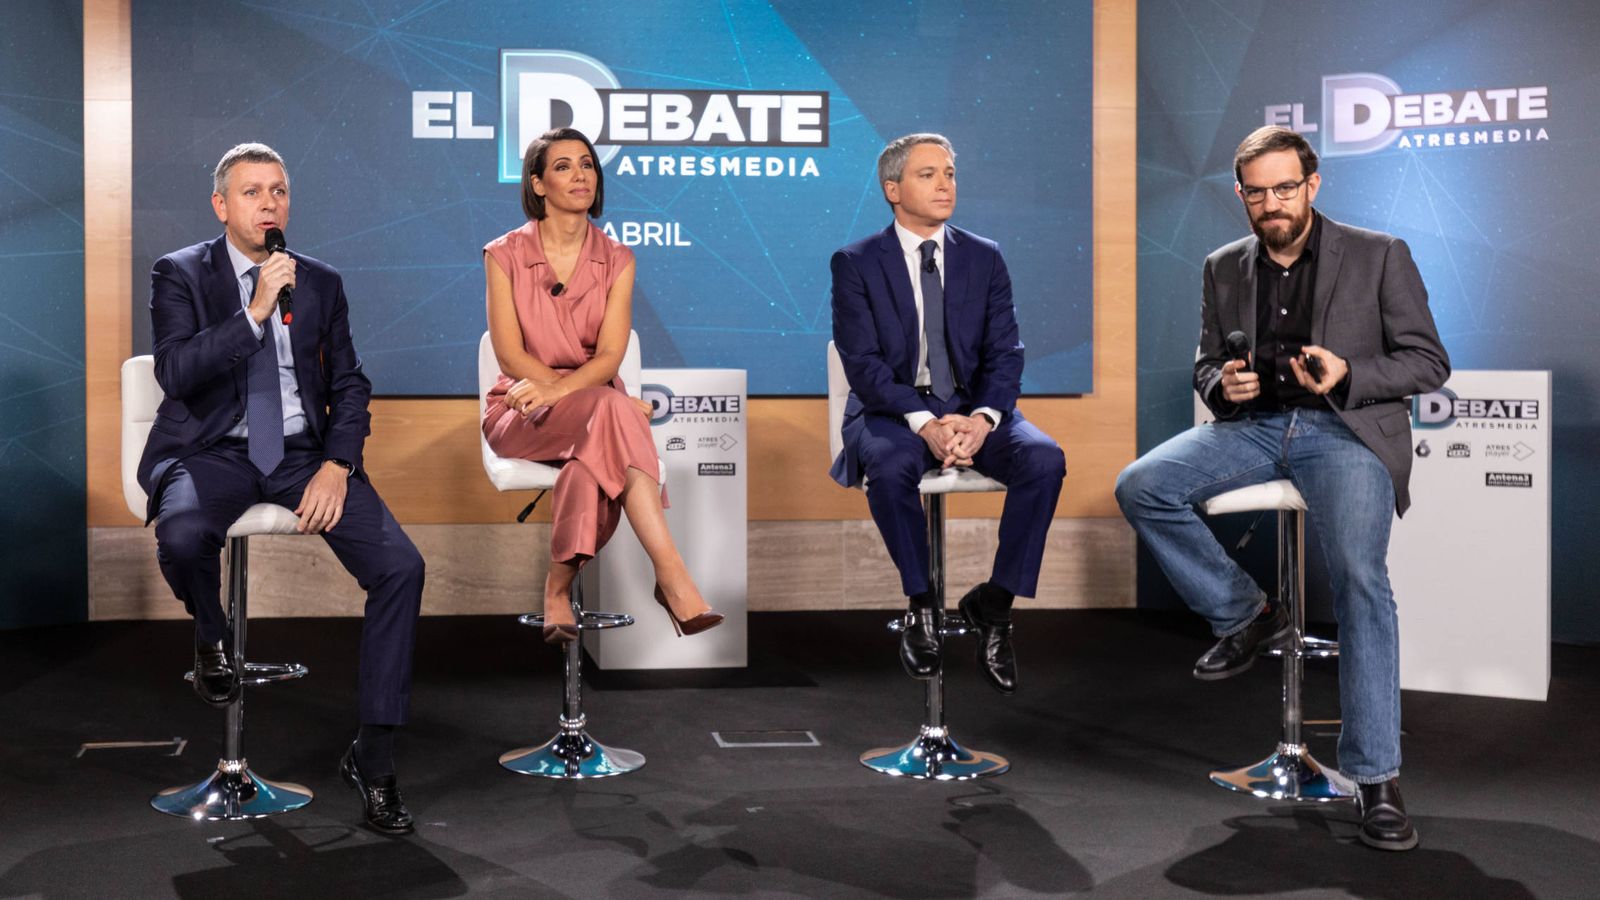 Foto: Santiago González, Ana Pastor, Vicente Vallés y César González Antón, el pasado 12 de abril en la presentación del debate electoral a cinco. (Atresmedia)